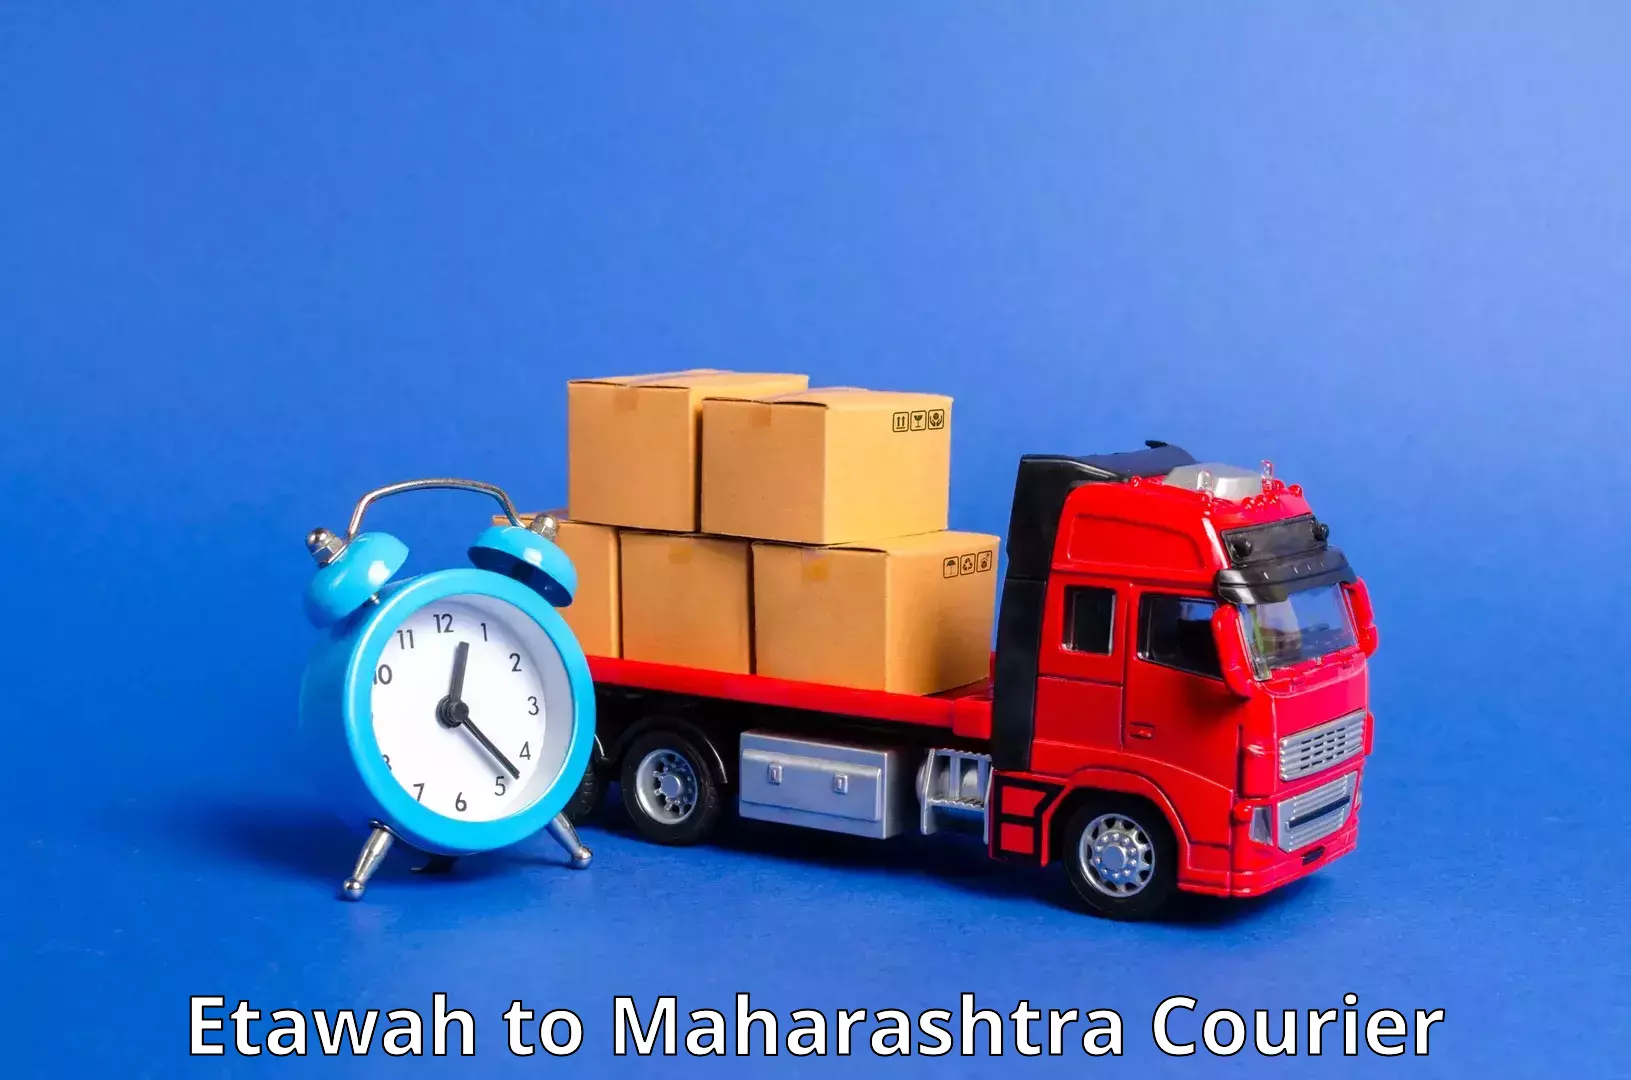 Tailored shipping plans Etawah to IIIT Pune